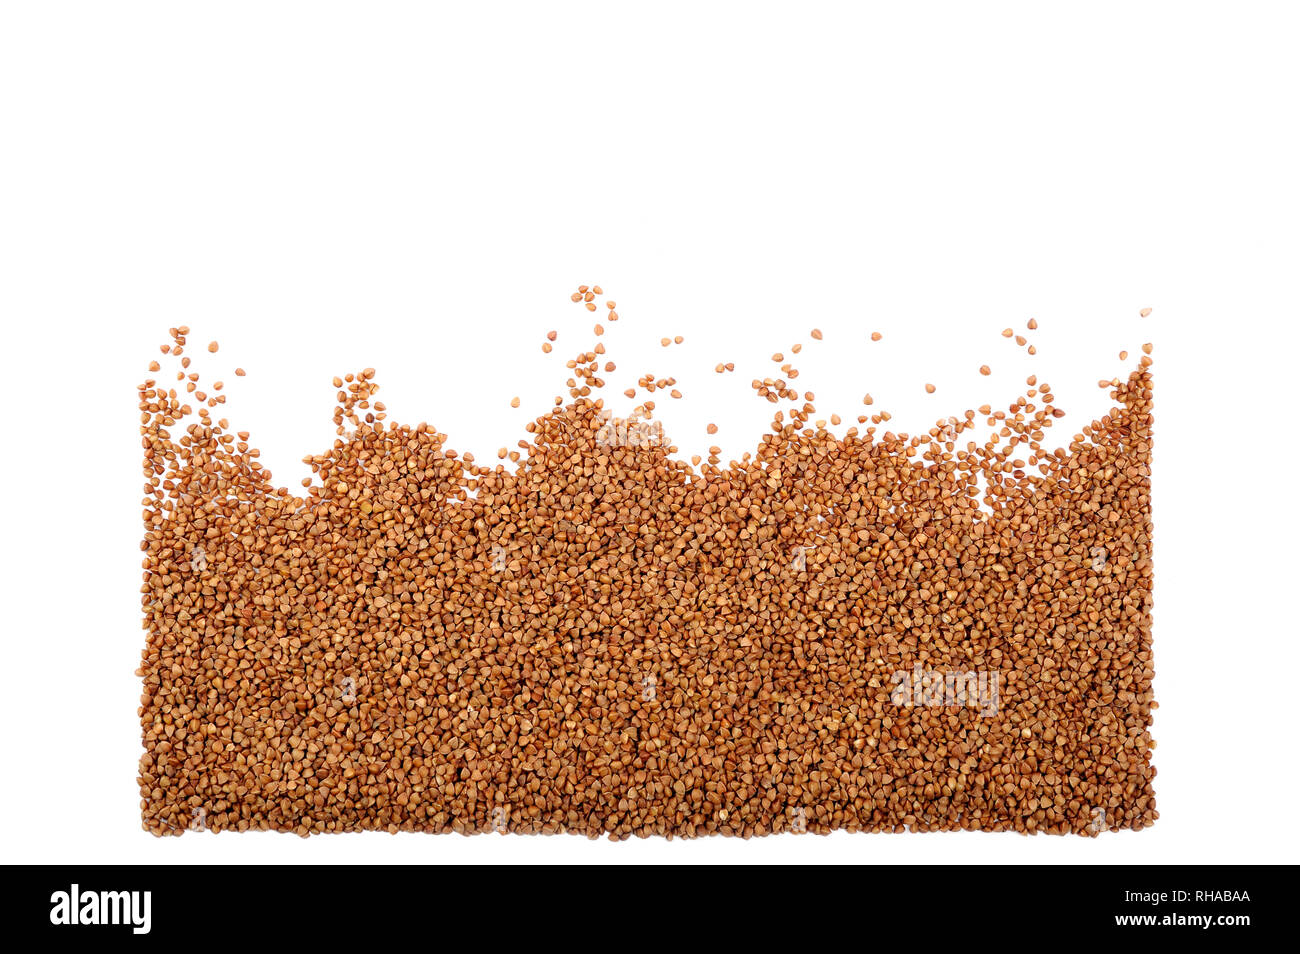 Grano saraceno organico isolato su bianco. Chicco di grano saraceno non contiene glutine, essa può essere mangiato da persone con glutine-disturbi correlati.negozio di generi alimentari o dietetici con Foto Stock